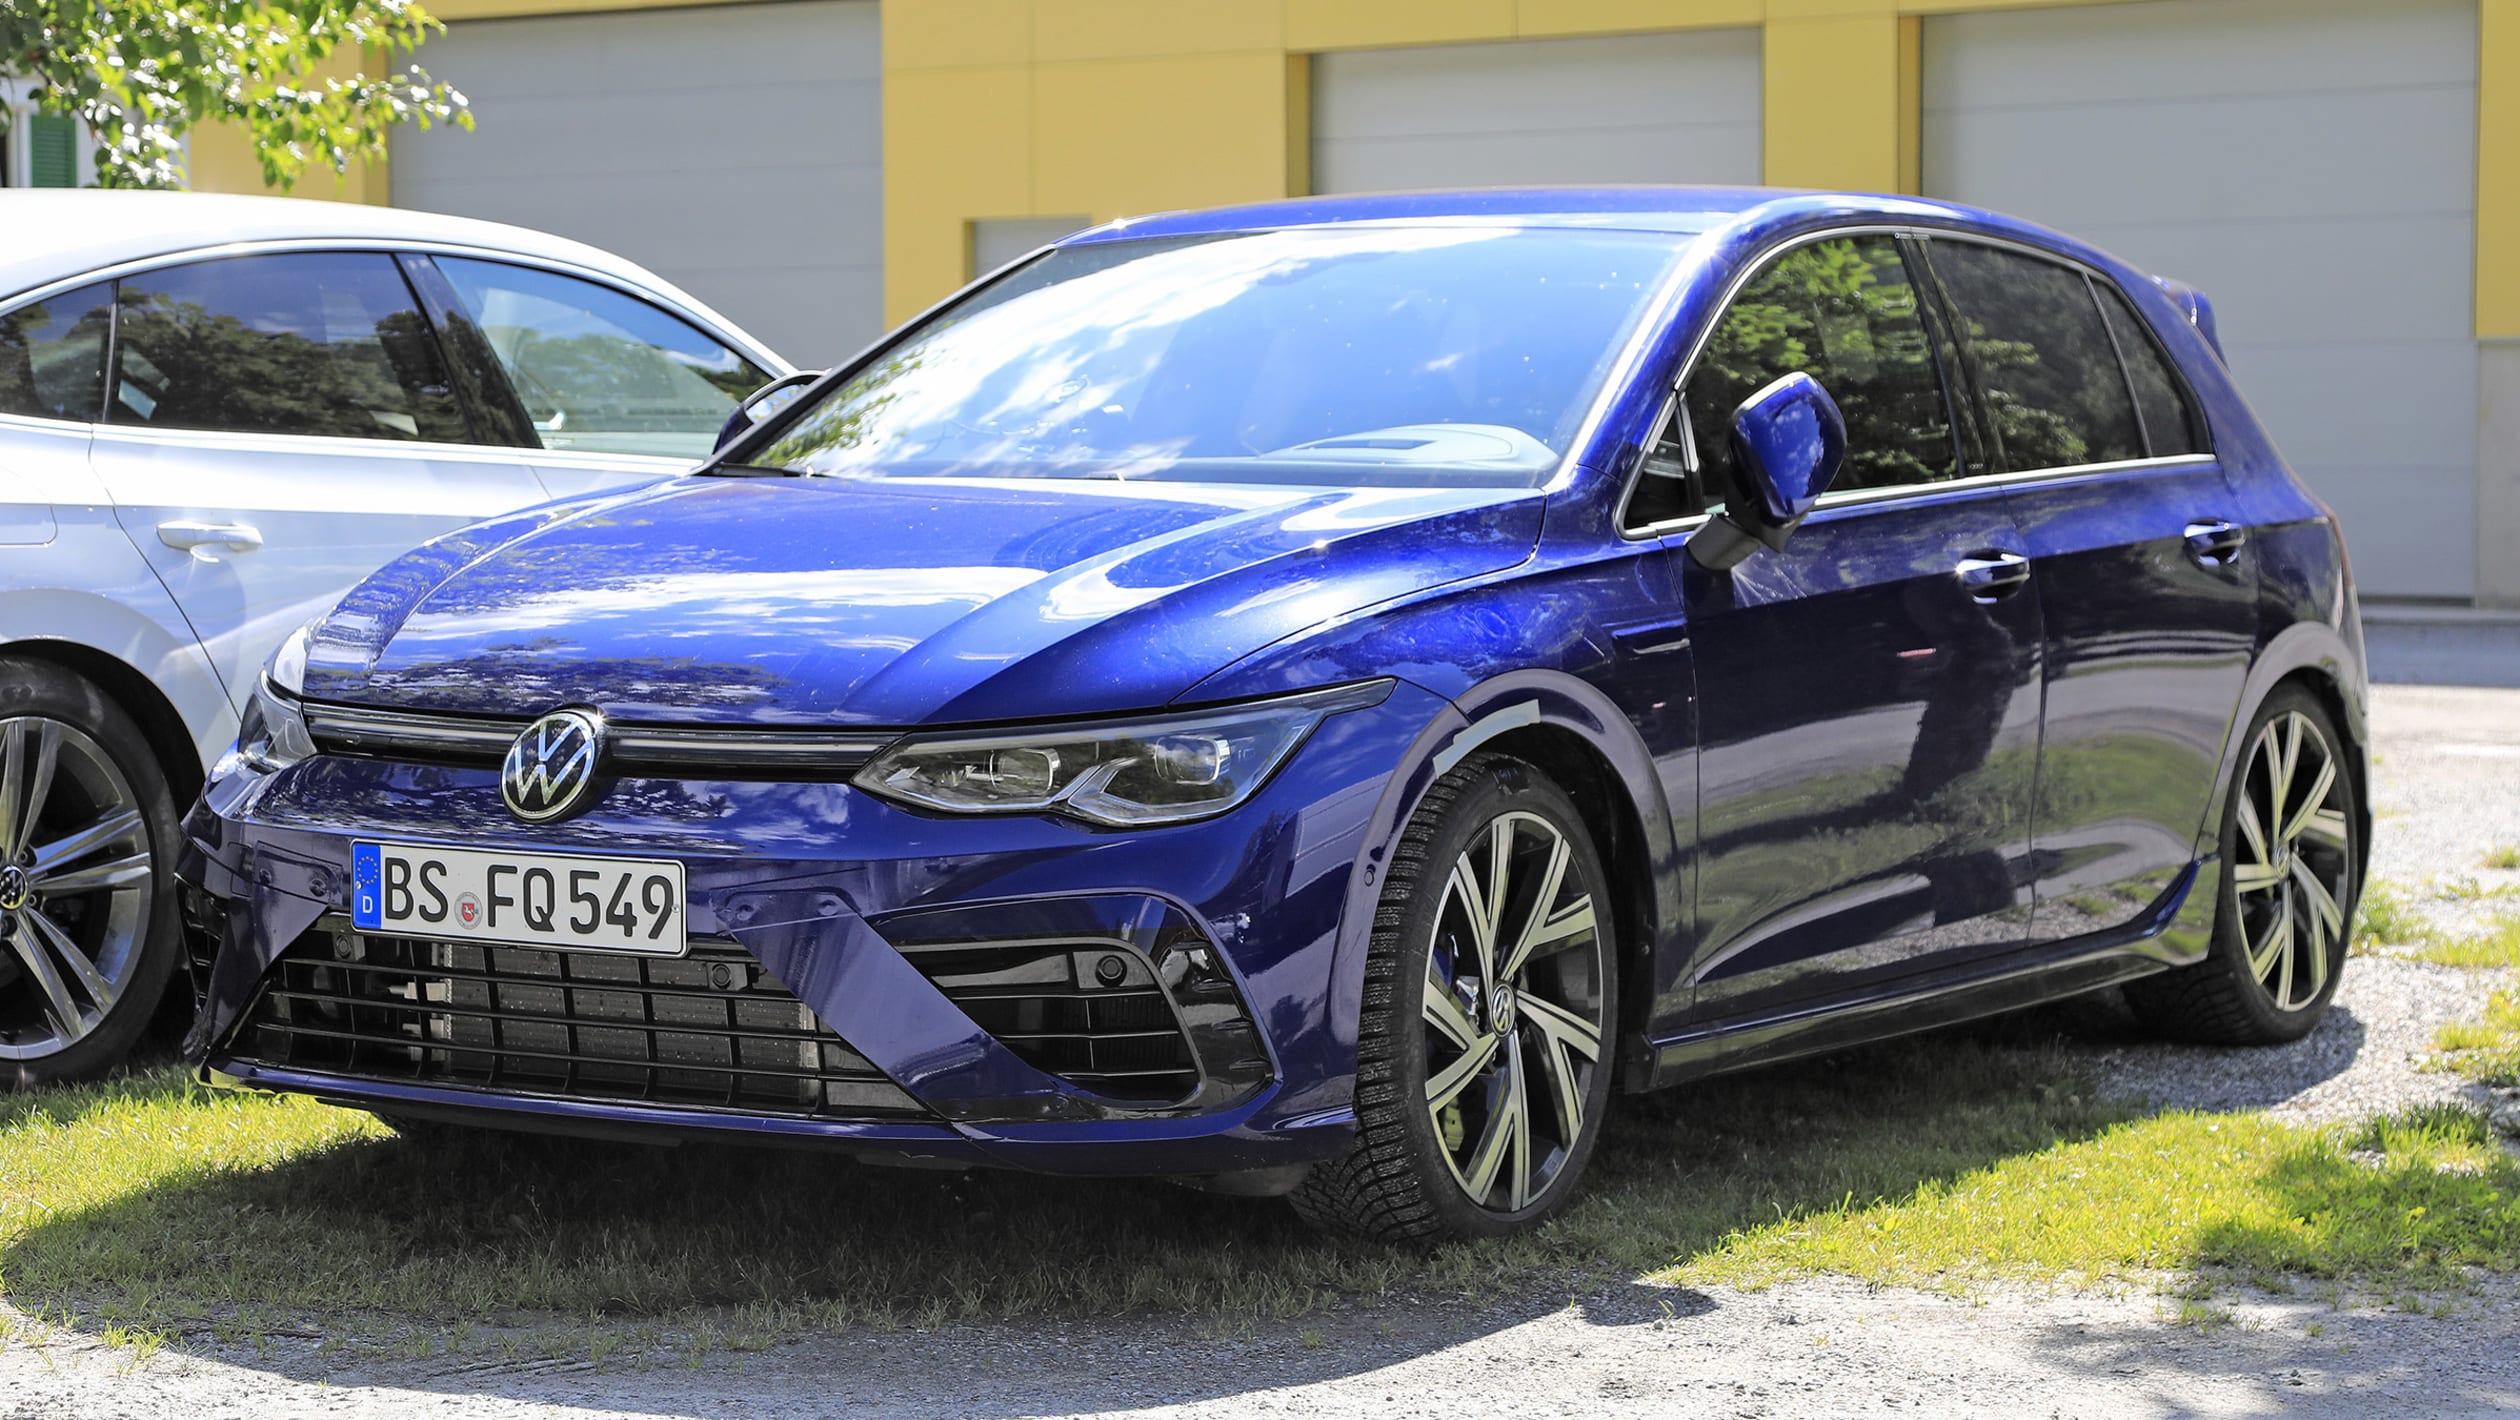 Kor fløjte vurdere 2021 Volkswagen Golf R spied: all details and images - Automotive Daily